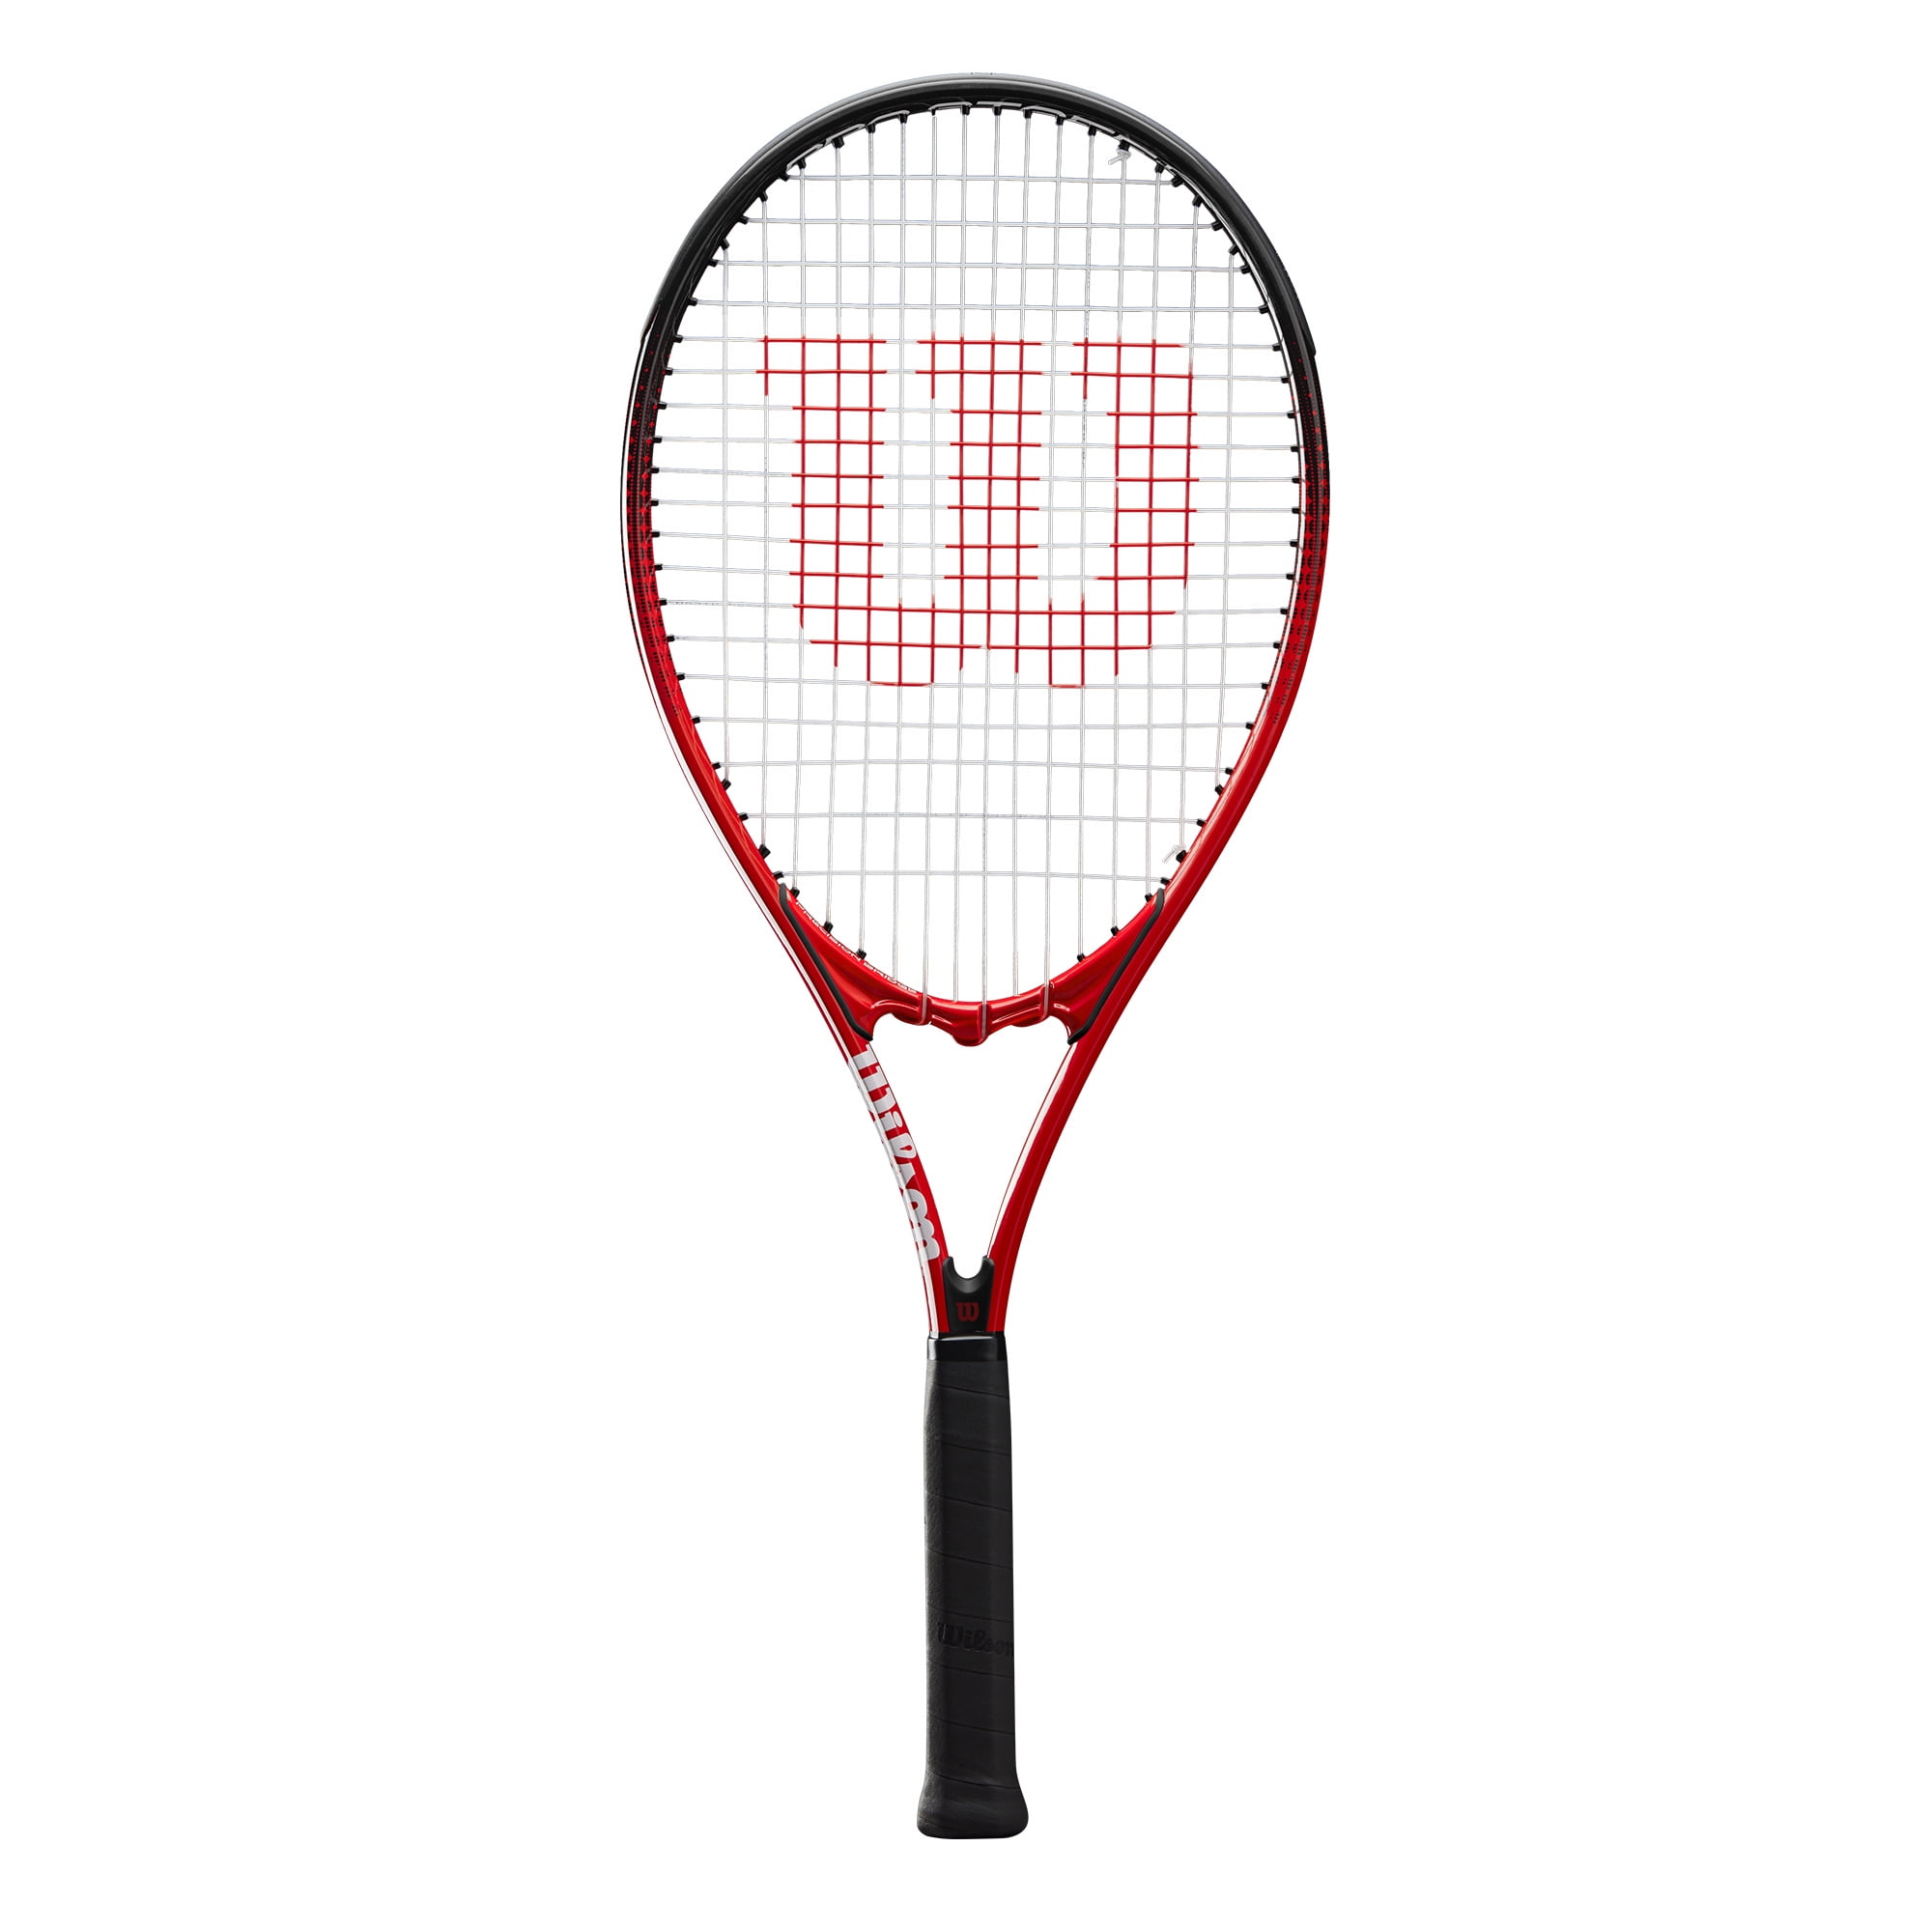 Head MXG 5 Tennis Racquet Grip Size 4 1/8" 